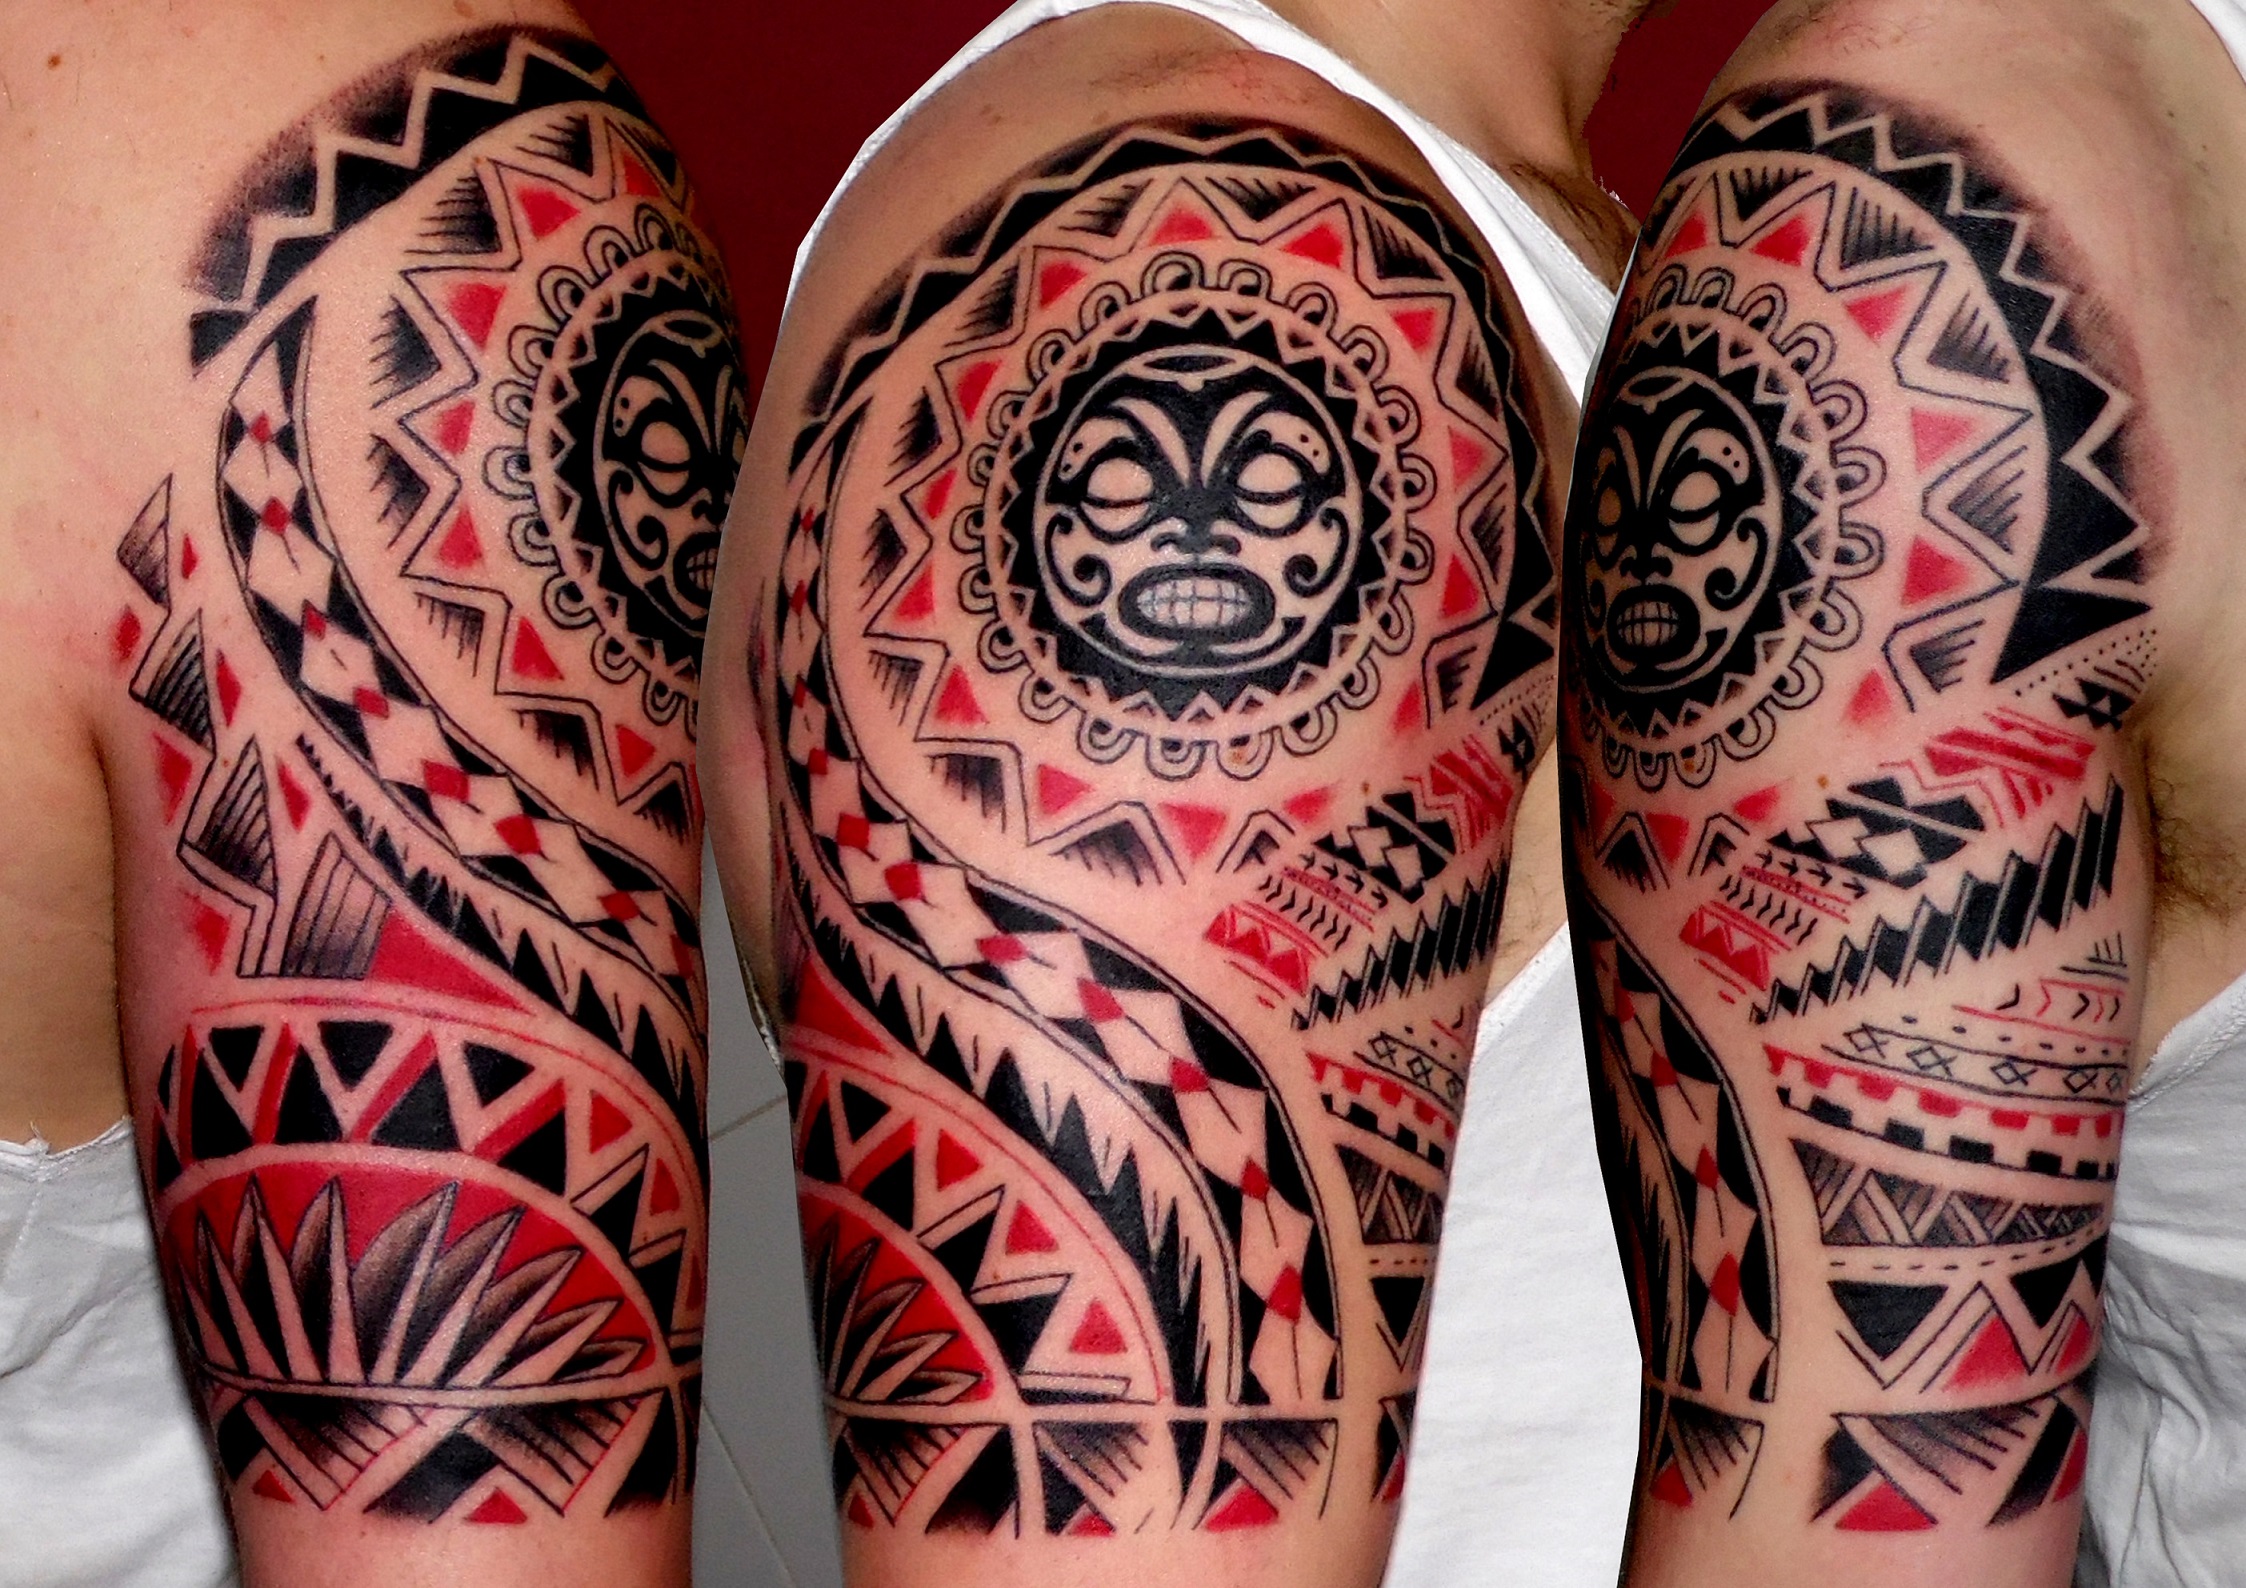 tatuaje tahitiano tribal tattoo hombro brazo mascara negro rojo 13depicas Jaca Huesca